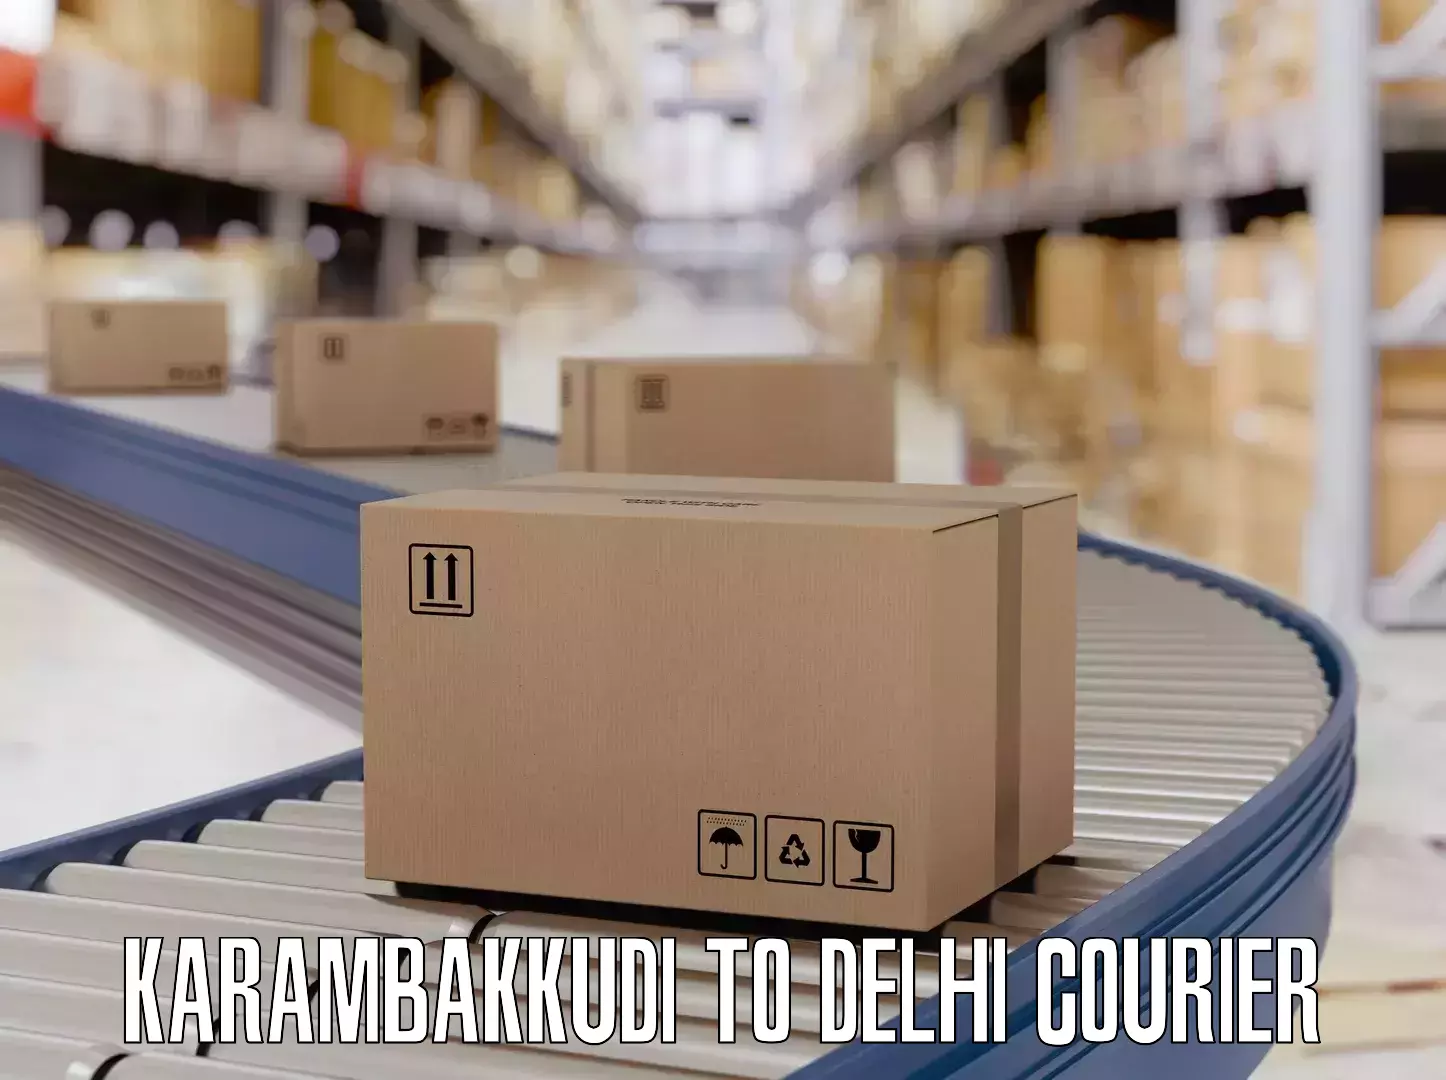 Luggage shipment processing Karambakkudi to Lodhi Road